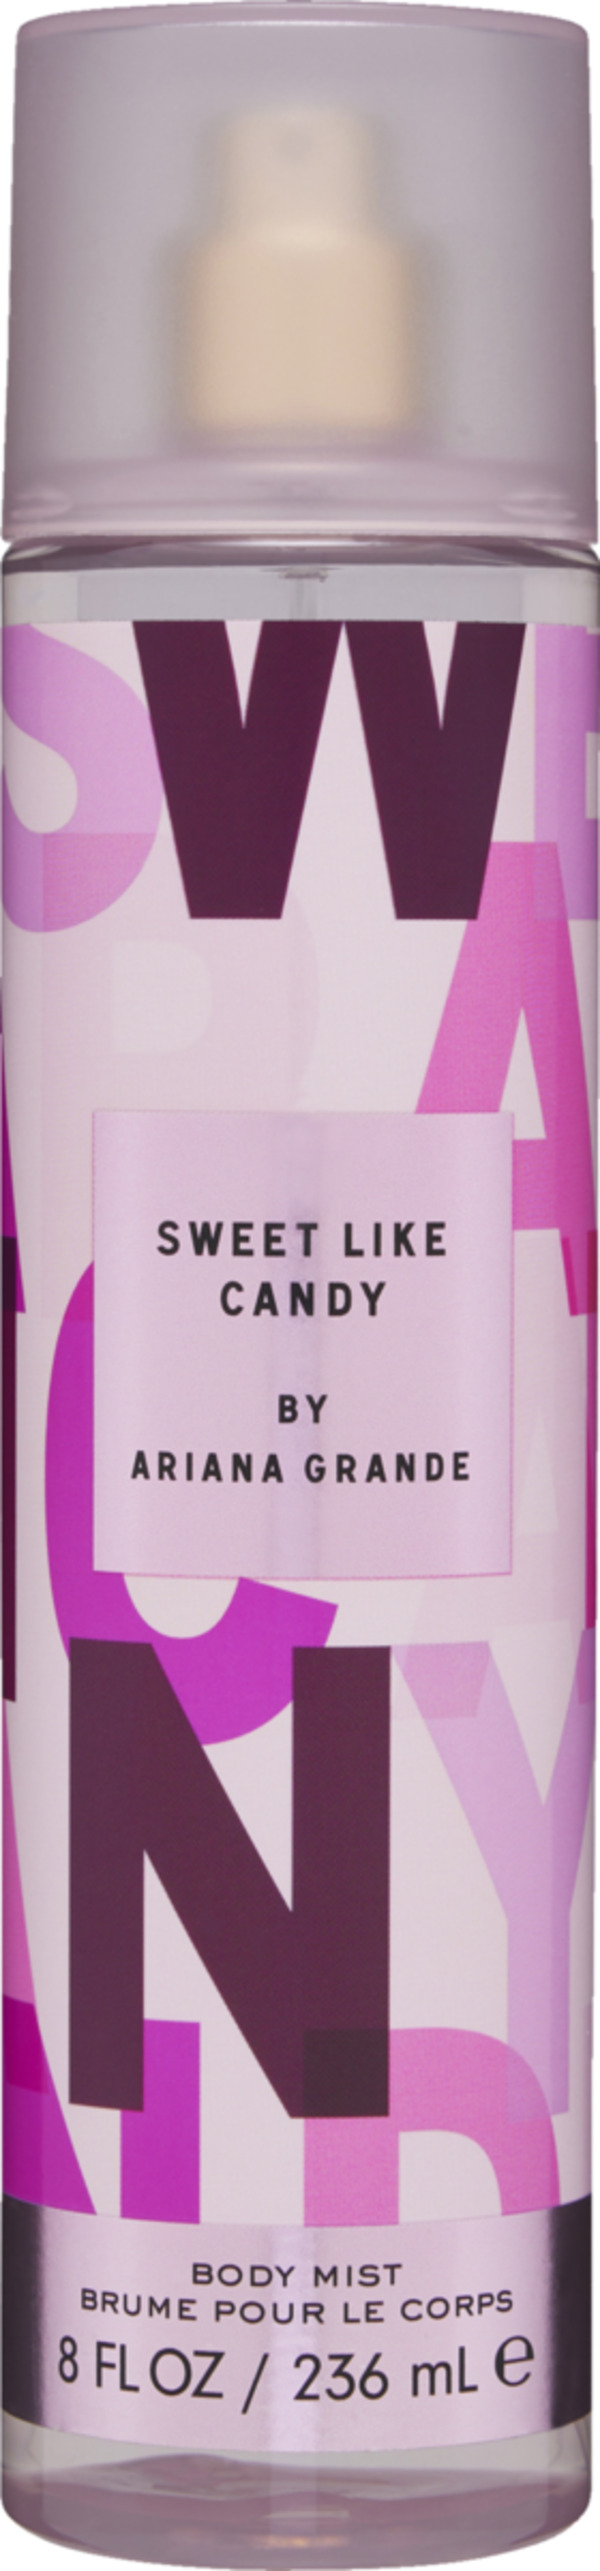 Bild 1 von Ariana Grande Body Mist Sweet like candy